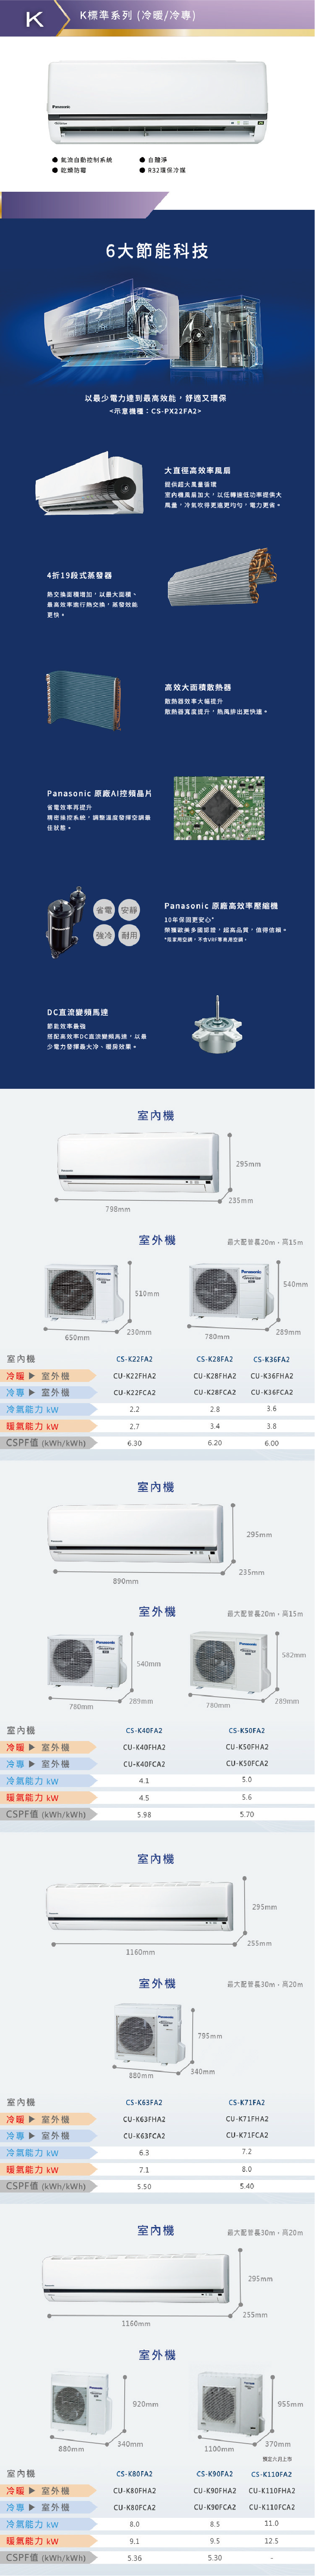 國際 CU-K90FCA2 16坪適用 K系列 分離式 變頻 冷專 冷氣 CS-K90FA2